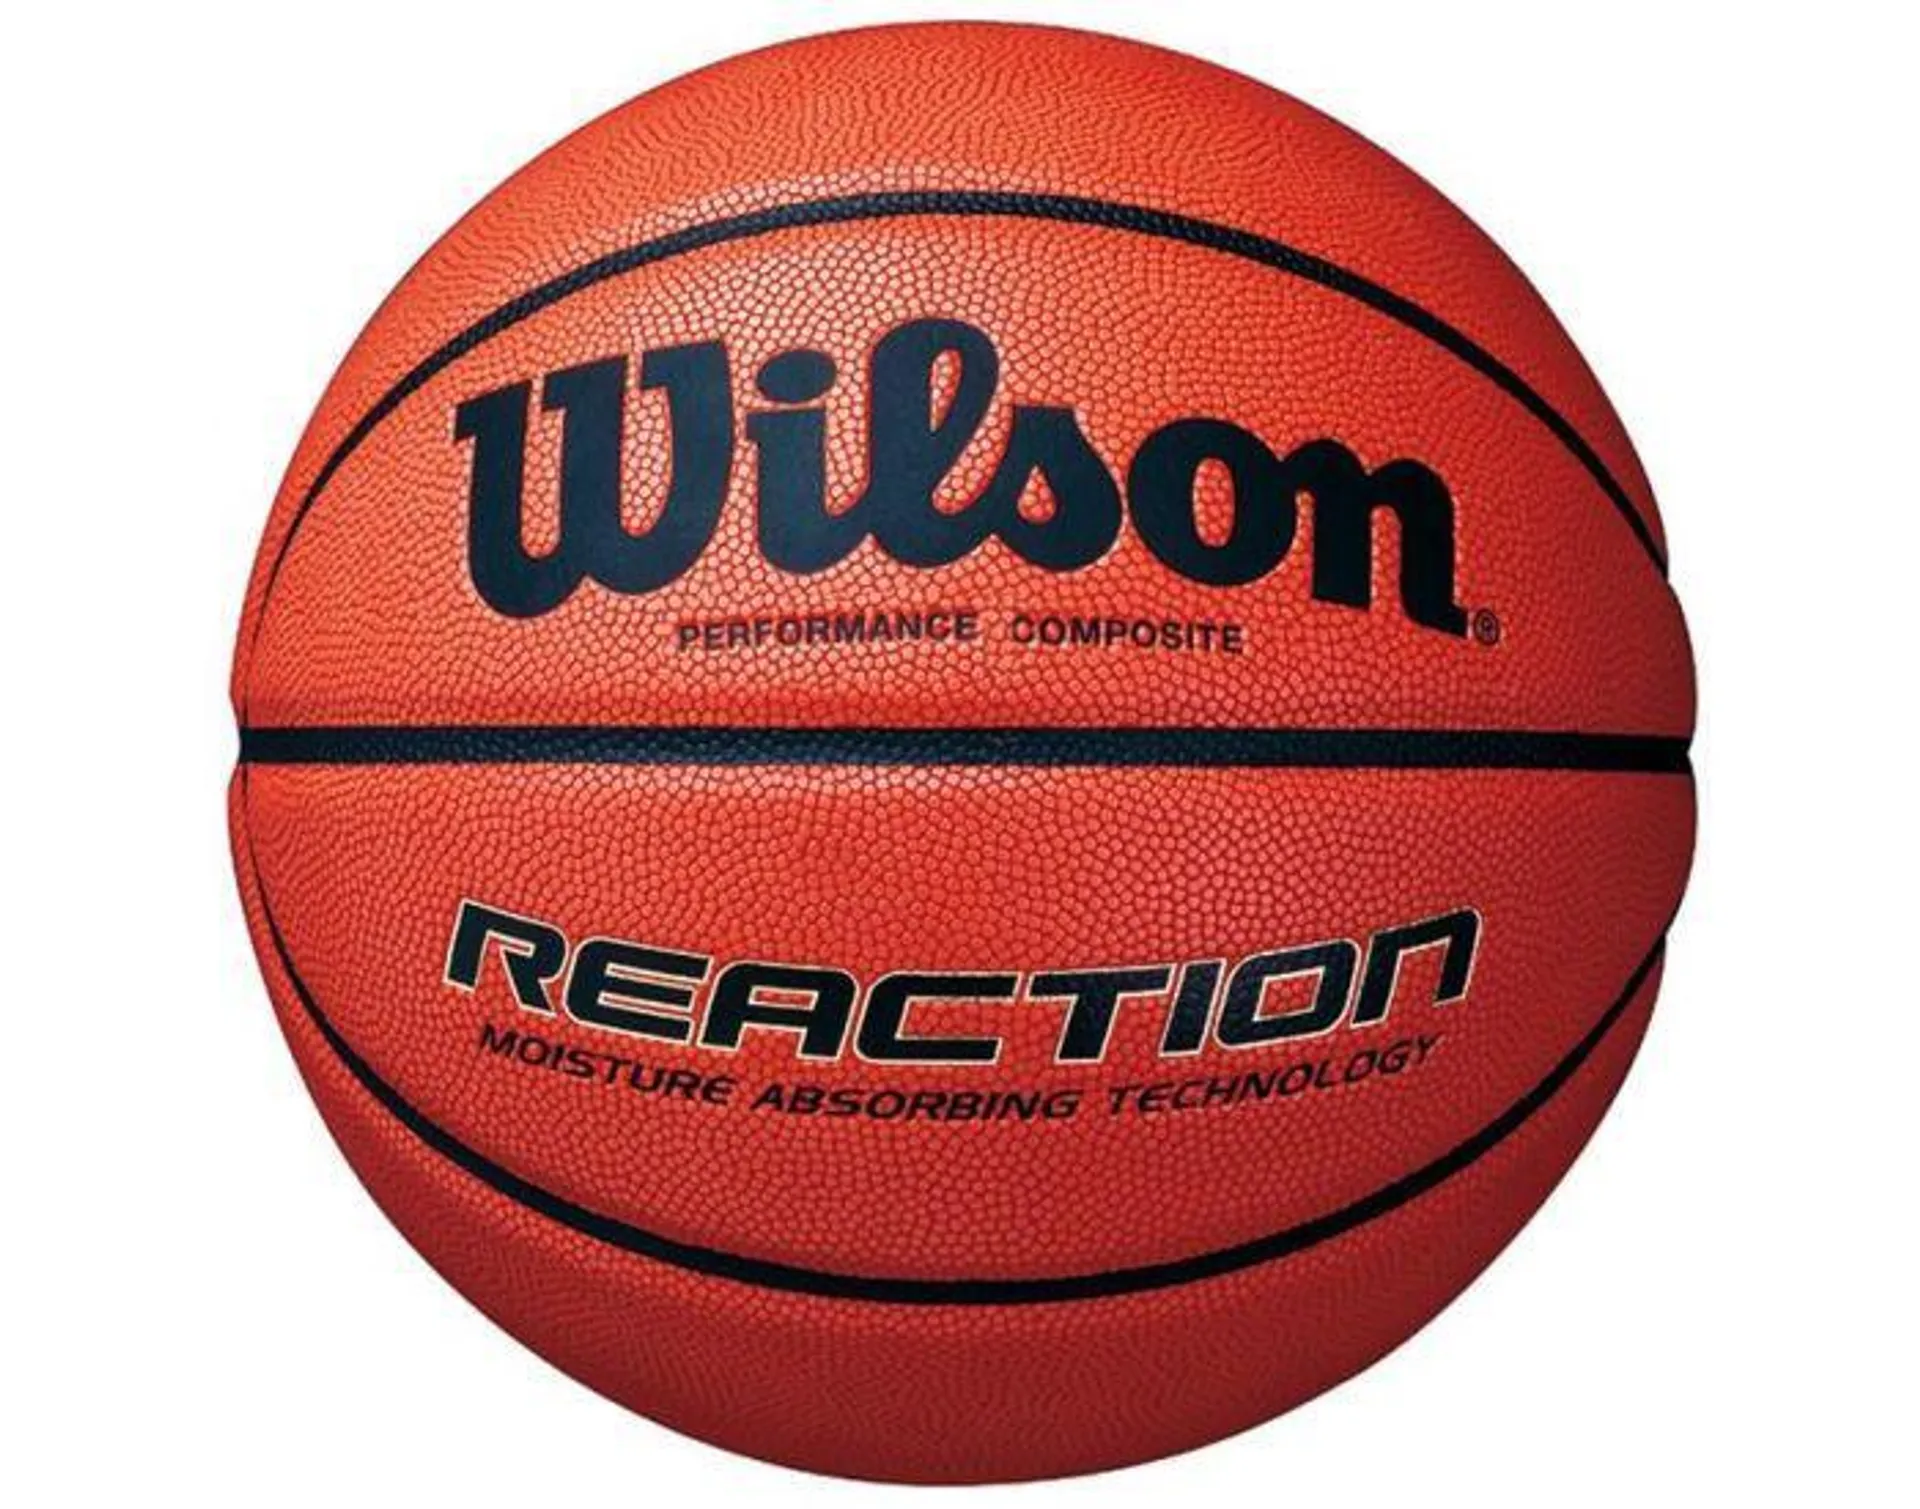 Reaction Basketball